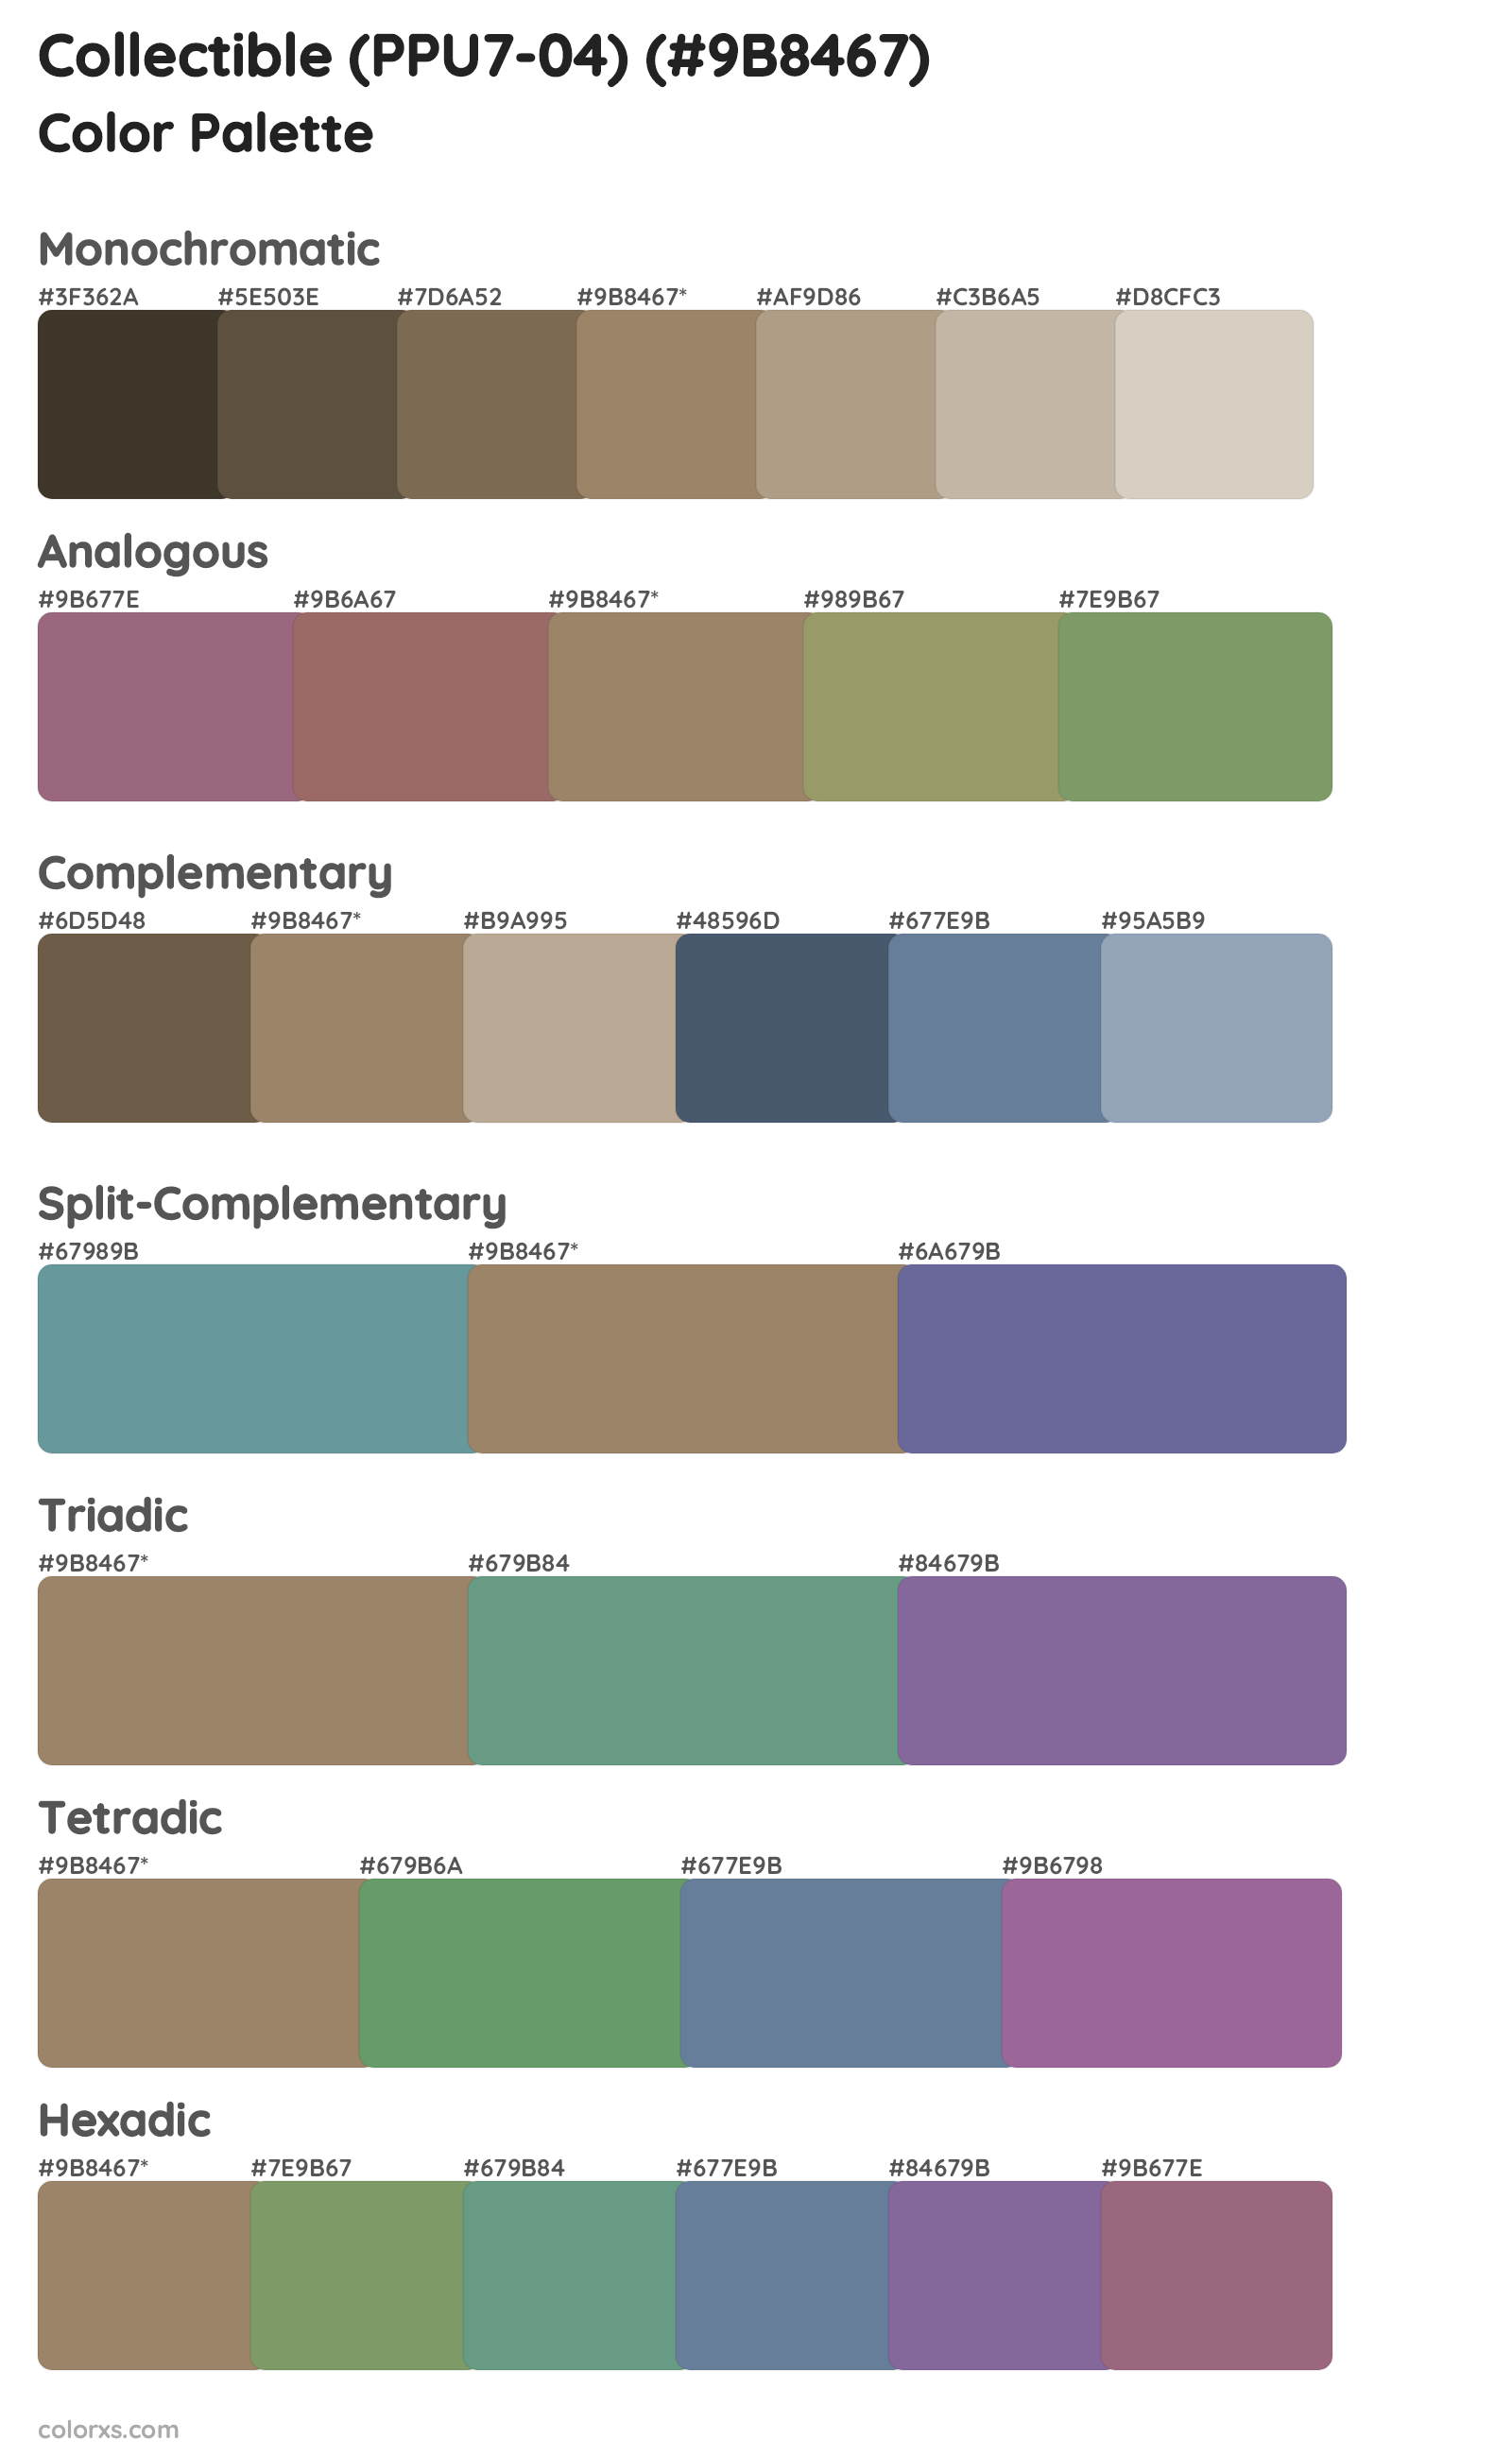 Collectible (PPU7-04) Color Scheme Palettes